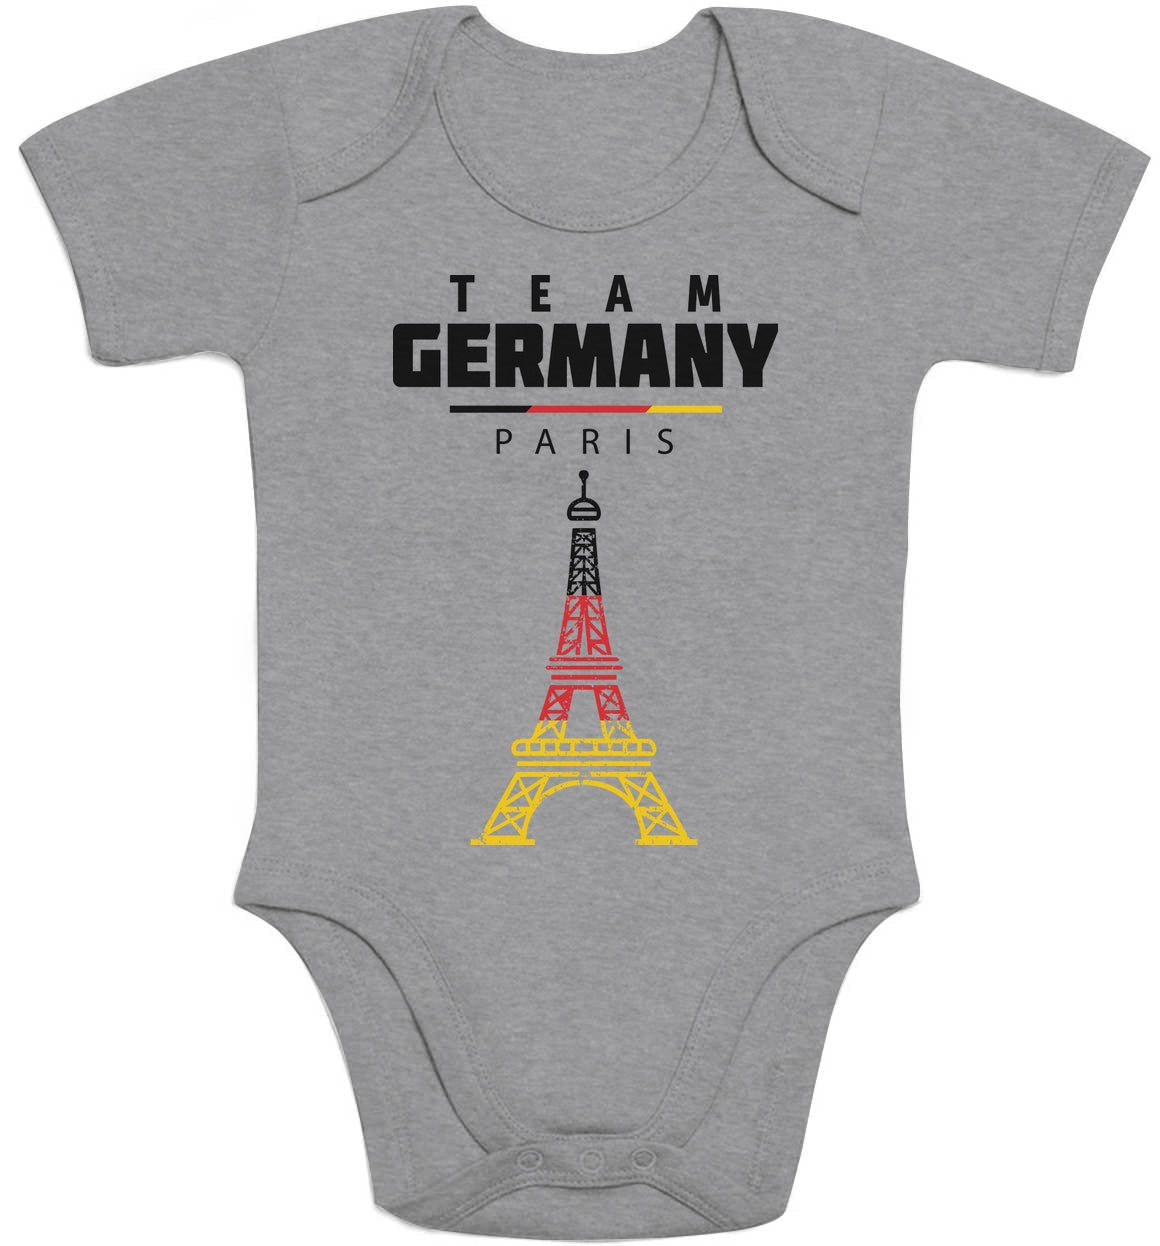 Olympische Spiele Team Germany 2024 Baby Body Kurzarm-Body